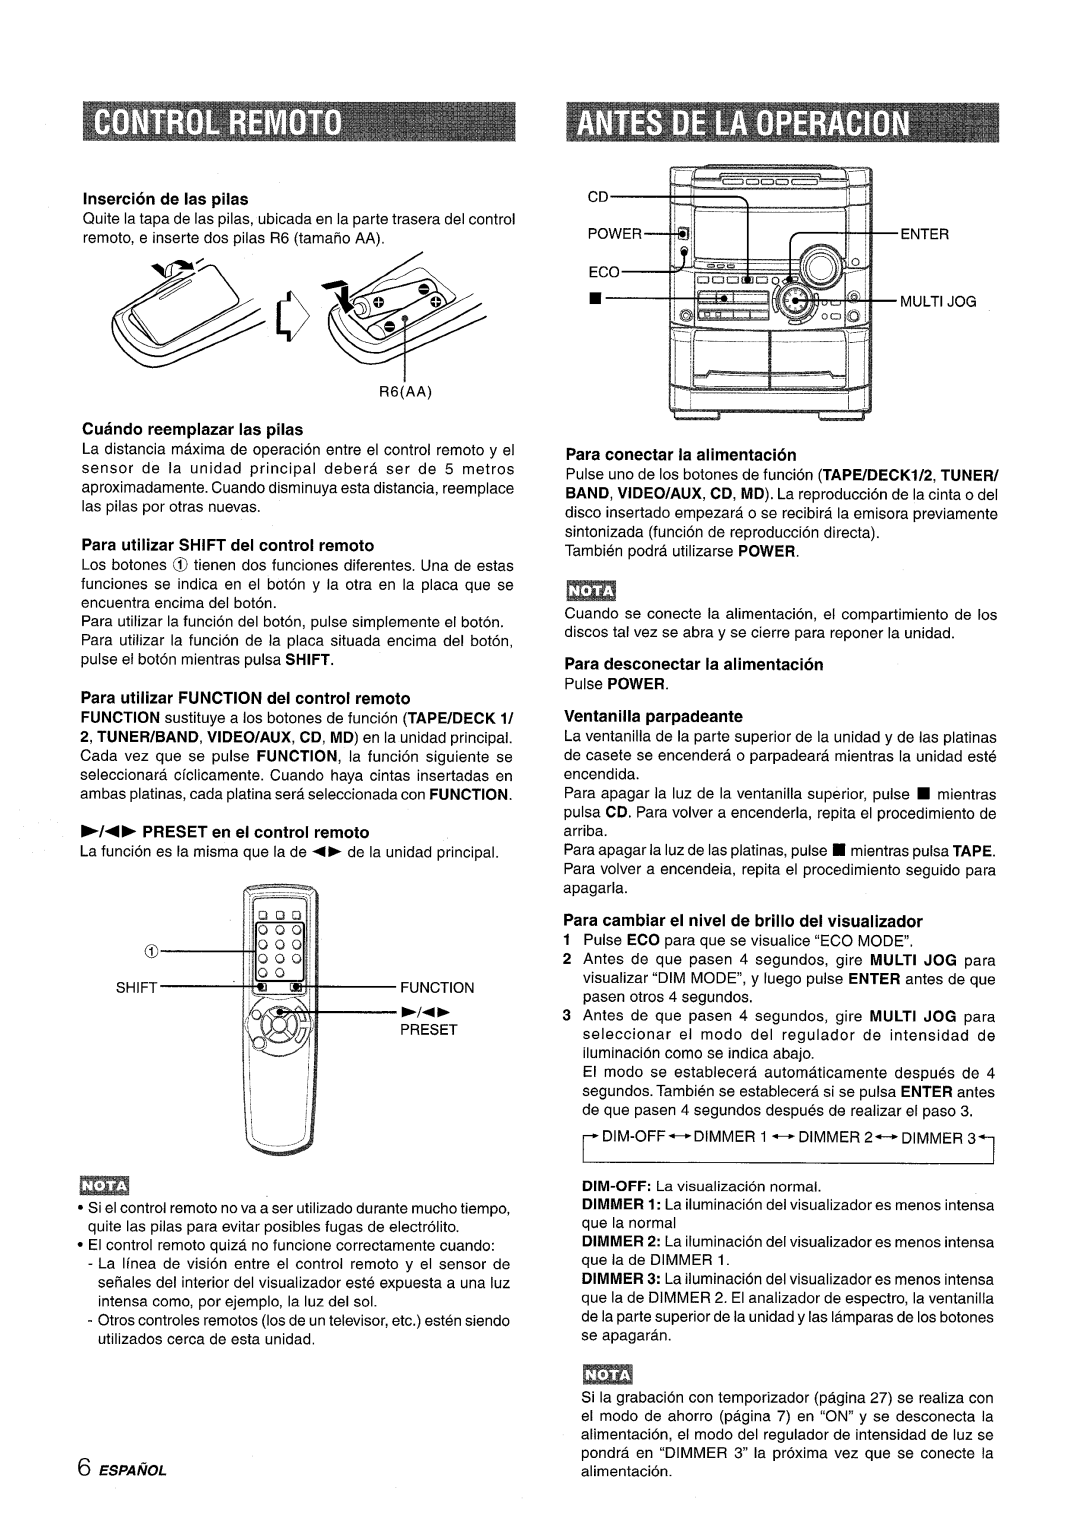 Sony NSX-A777 manual Insertion de Ias pilas, Lj, Para desconectar la alimentacion, Cuando reemplazar Ias pilas, J-- 1---d 